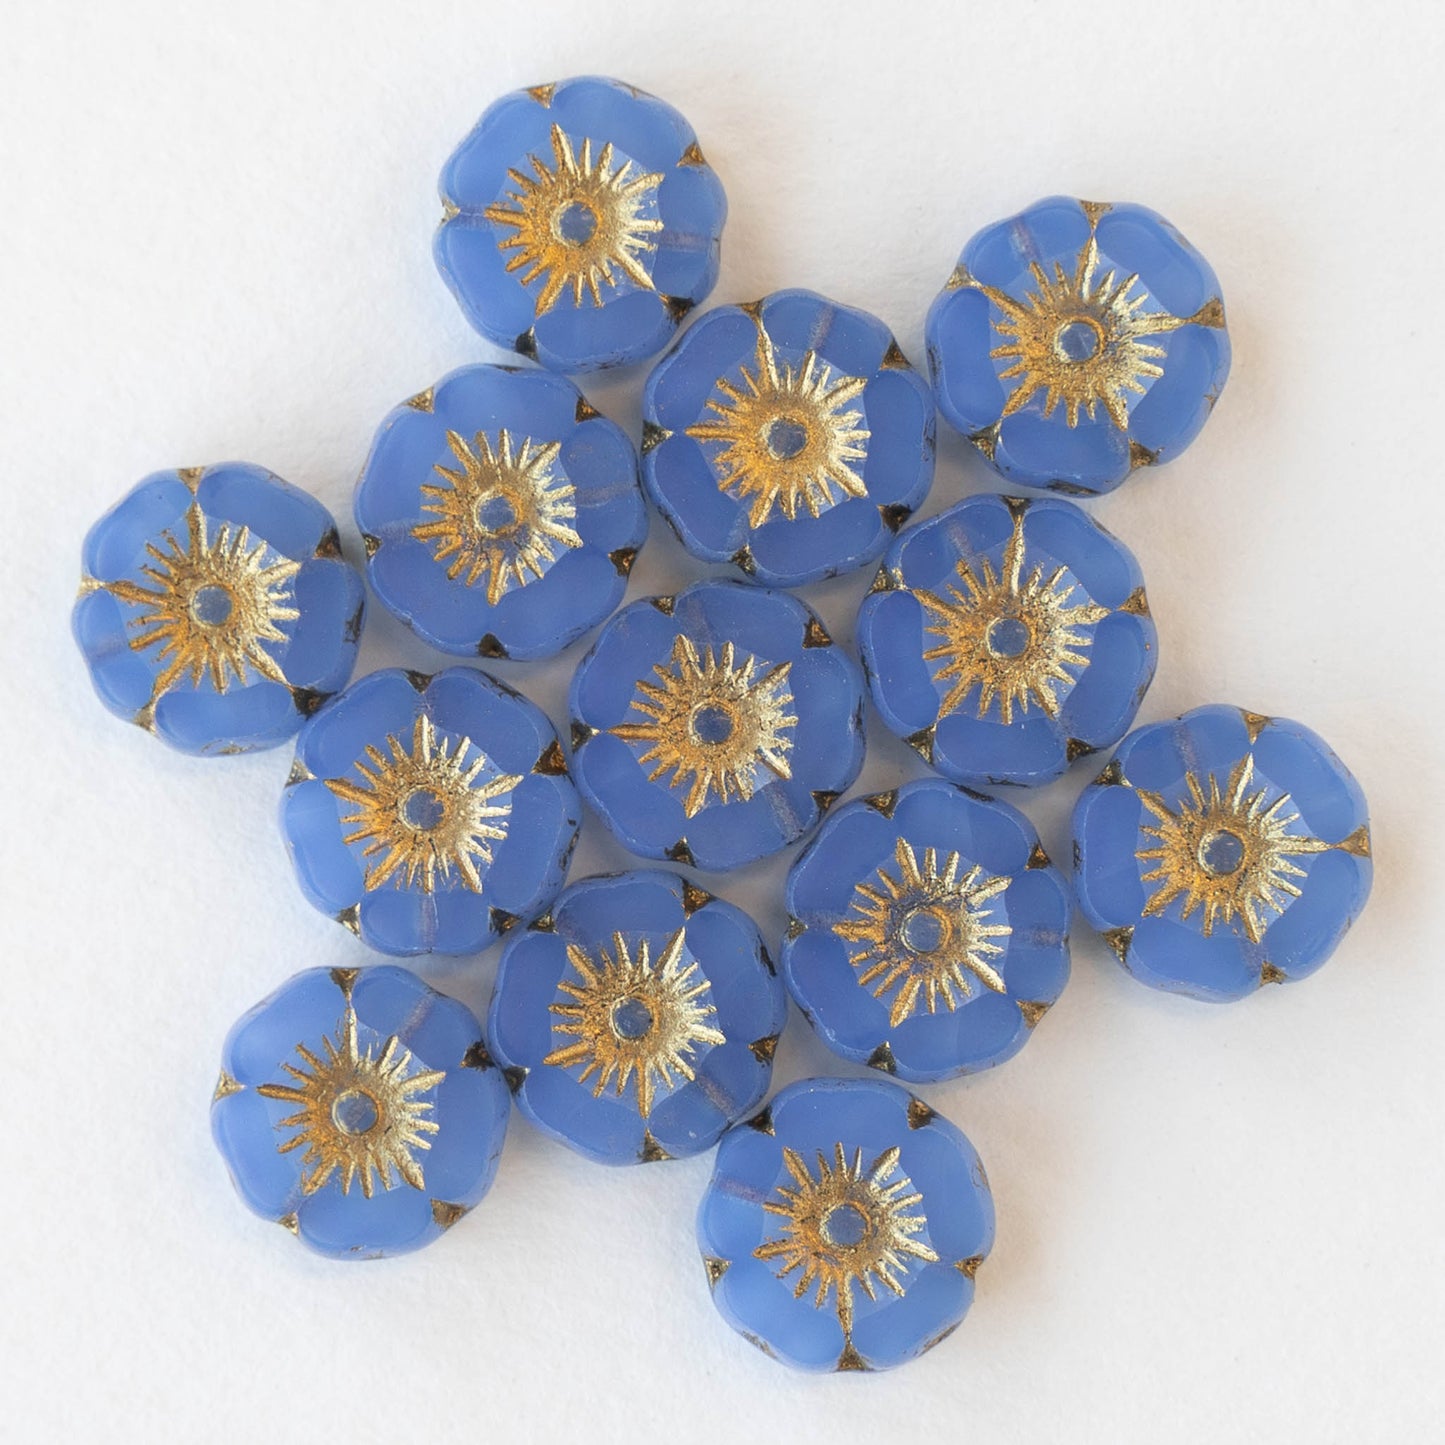 12mm Glass Flower Beads - Blue Opaline - 12 beads